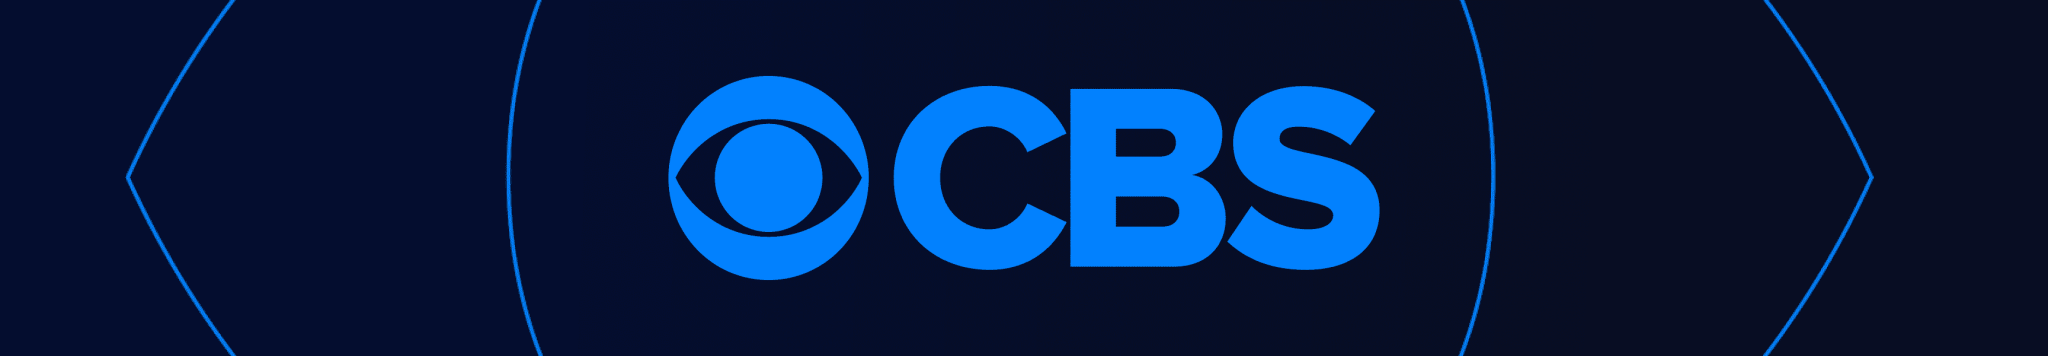 CBS Unterhaltung Logo